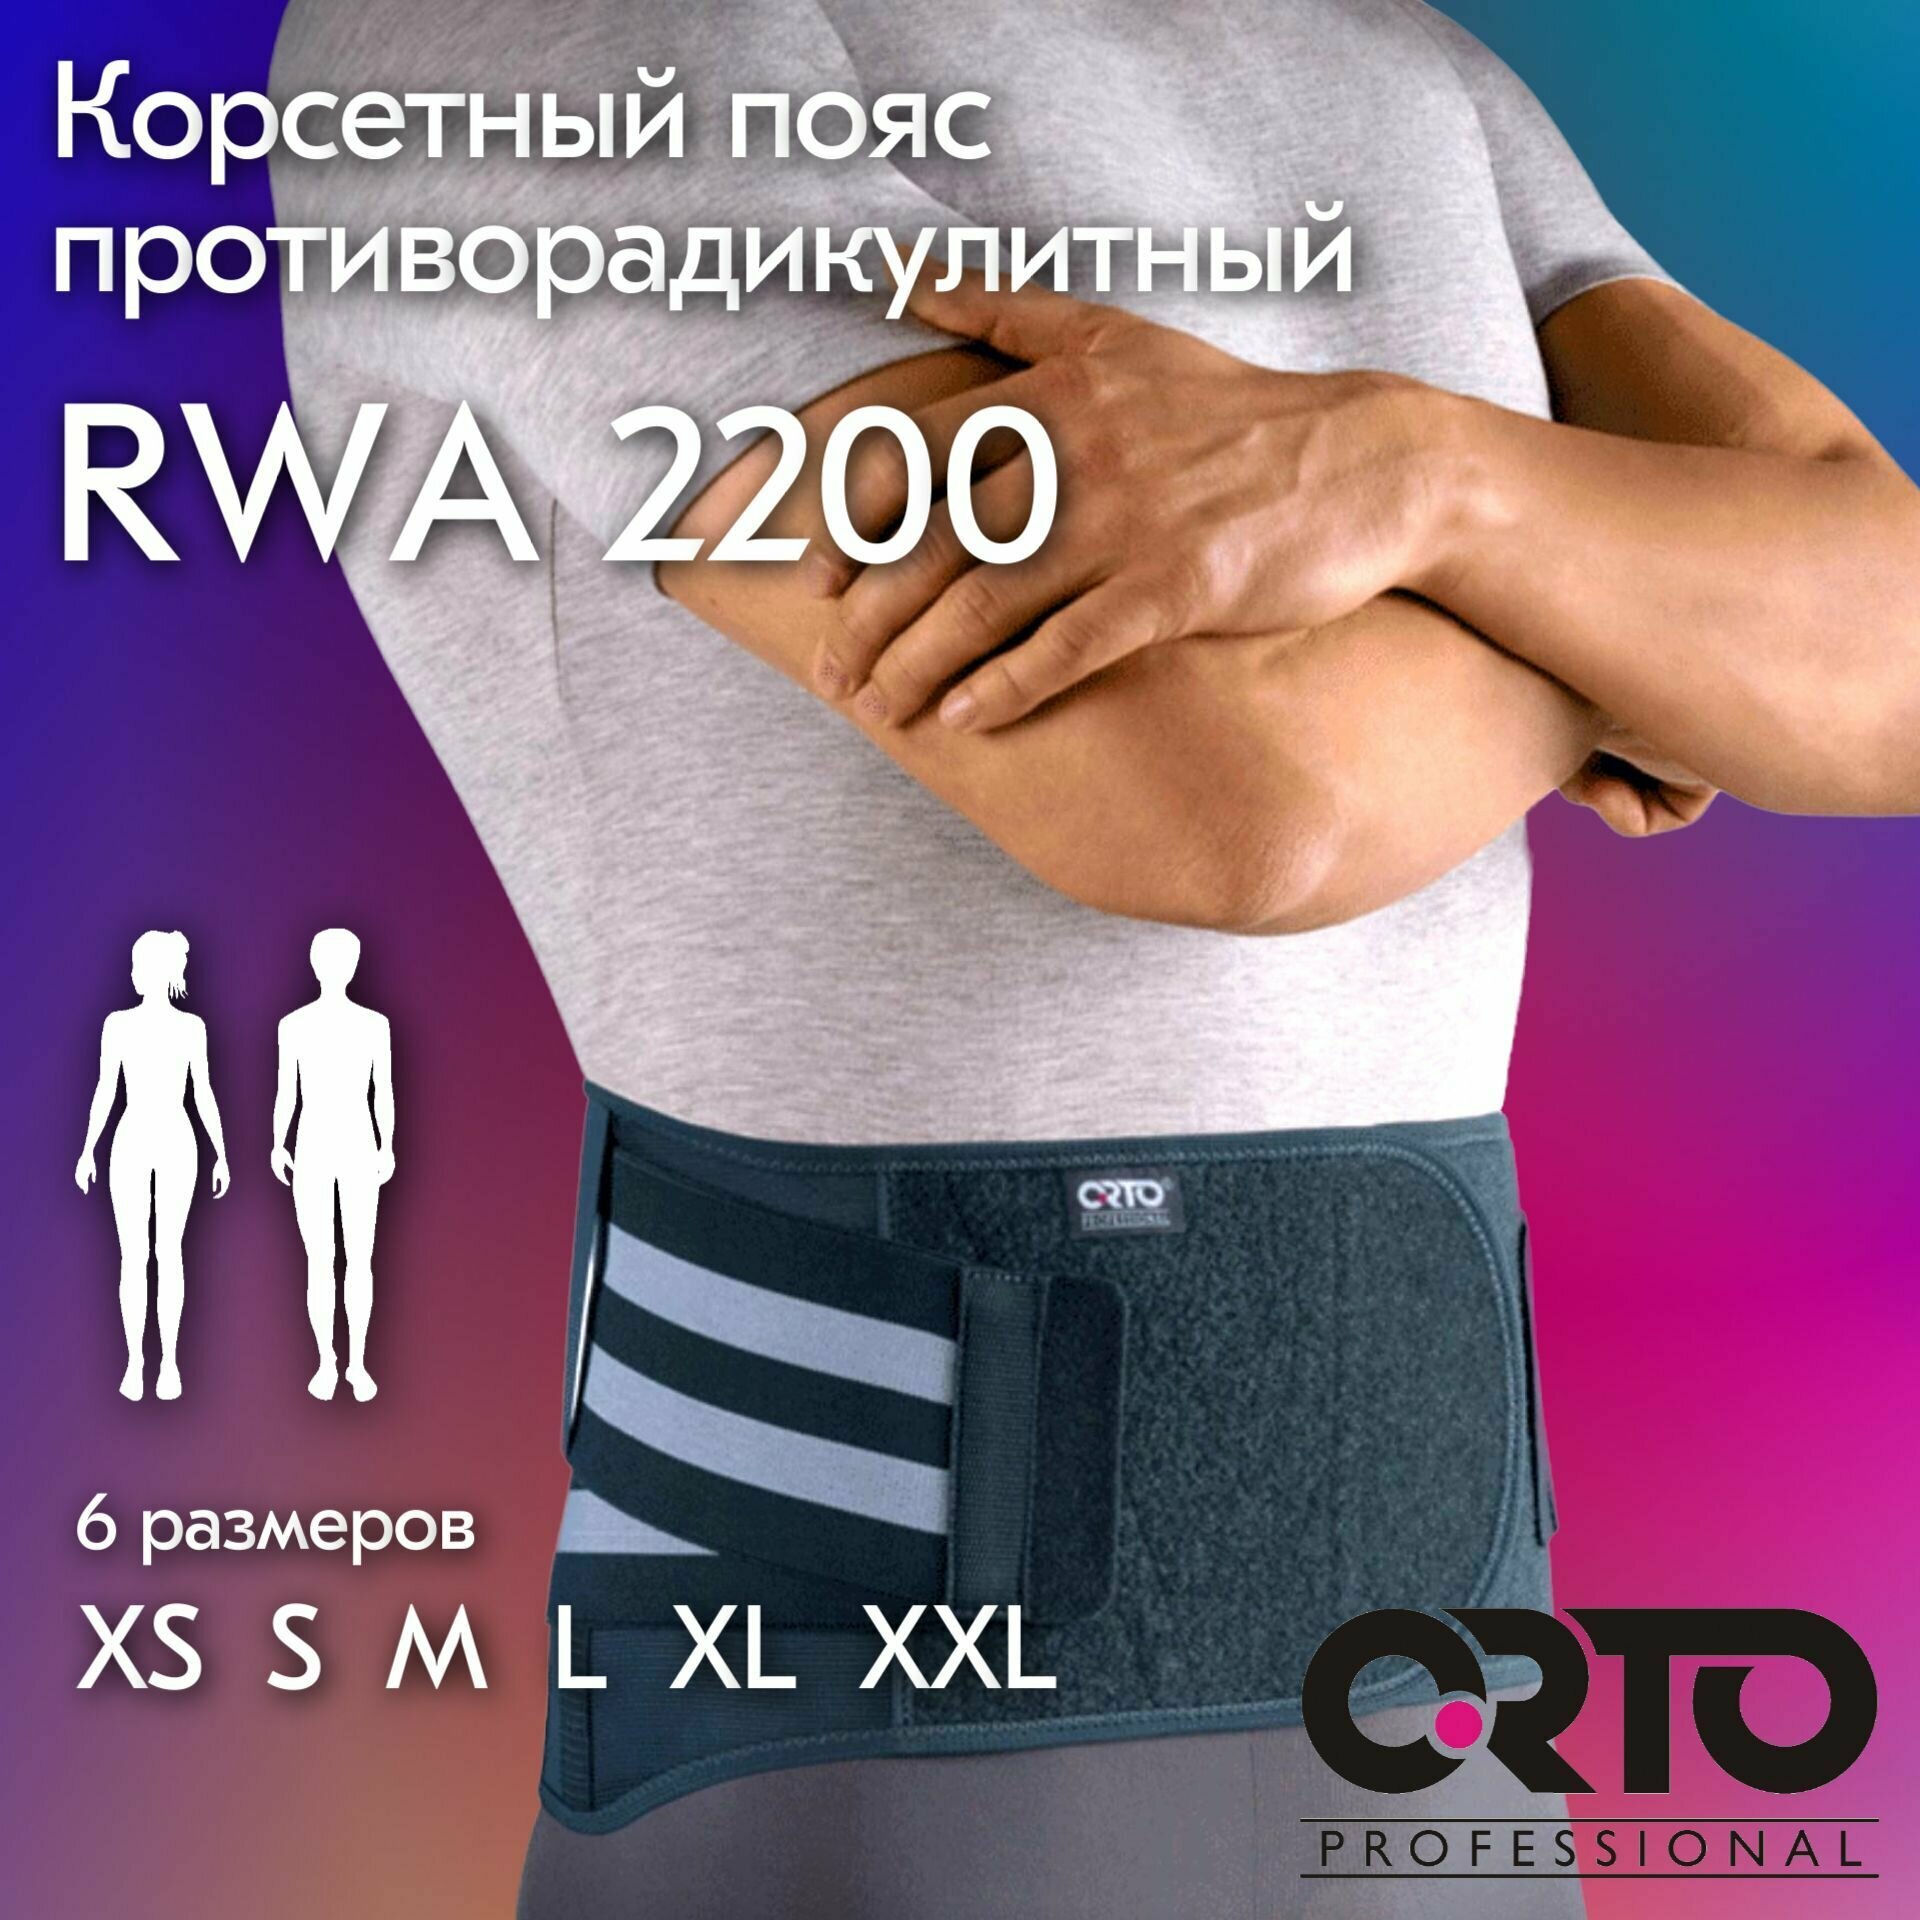 Корсет противорадикулитный ORTO PROFESSIONAL RWA 2200 XS